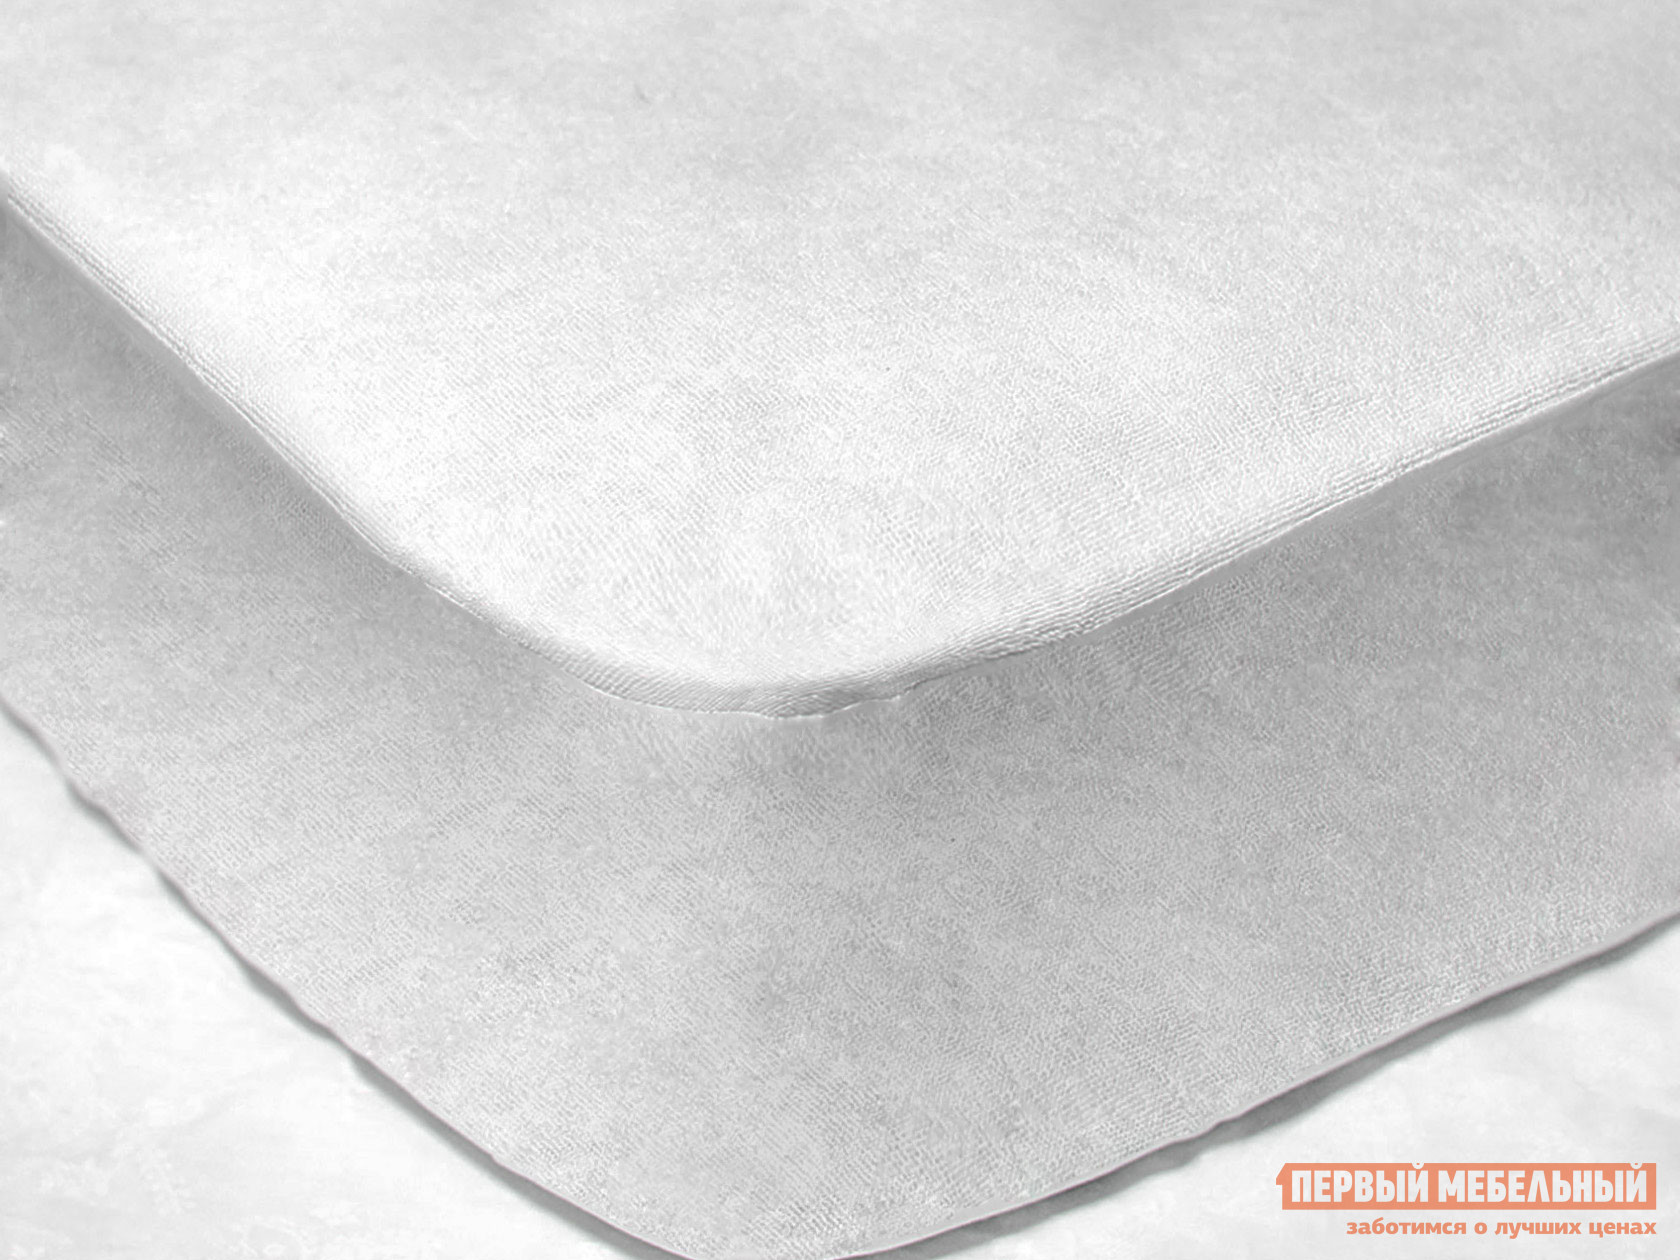 Чехол для матраса  Фулл протекшн с бортом Белый махровый, 1200 Х 2000 мм от Первый Мебельный